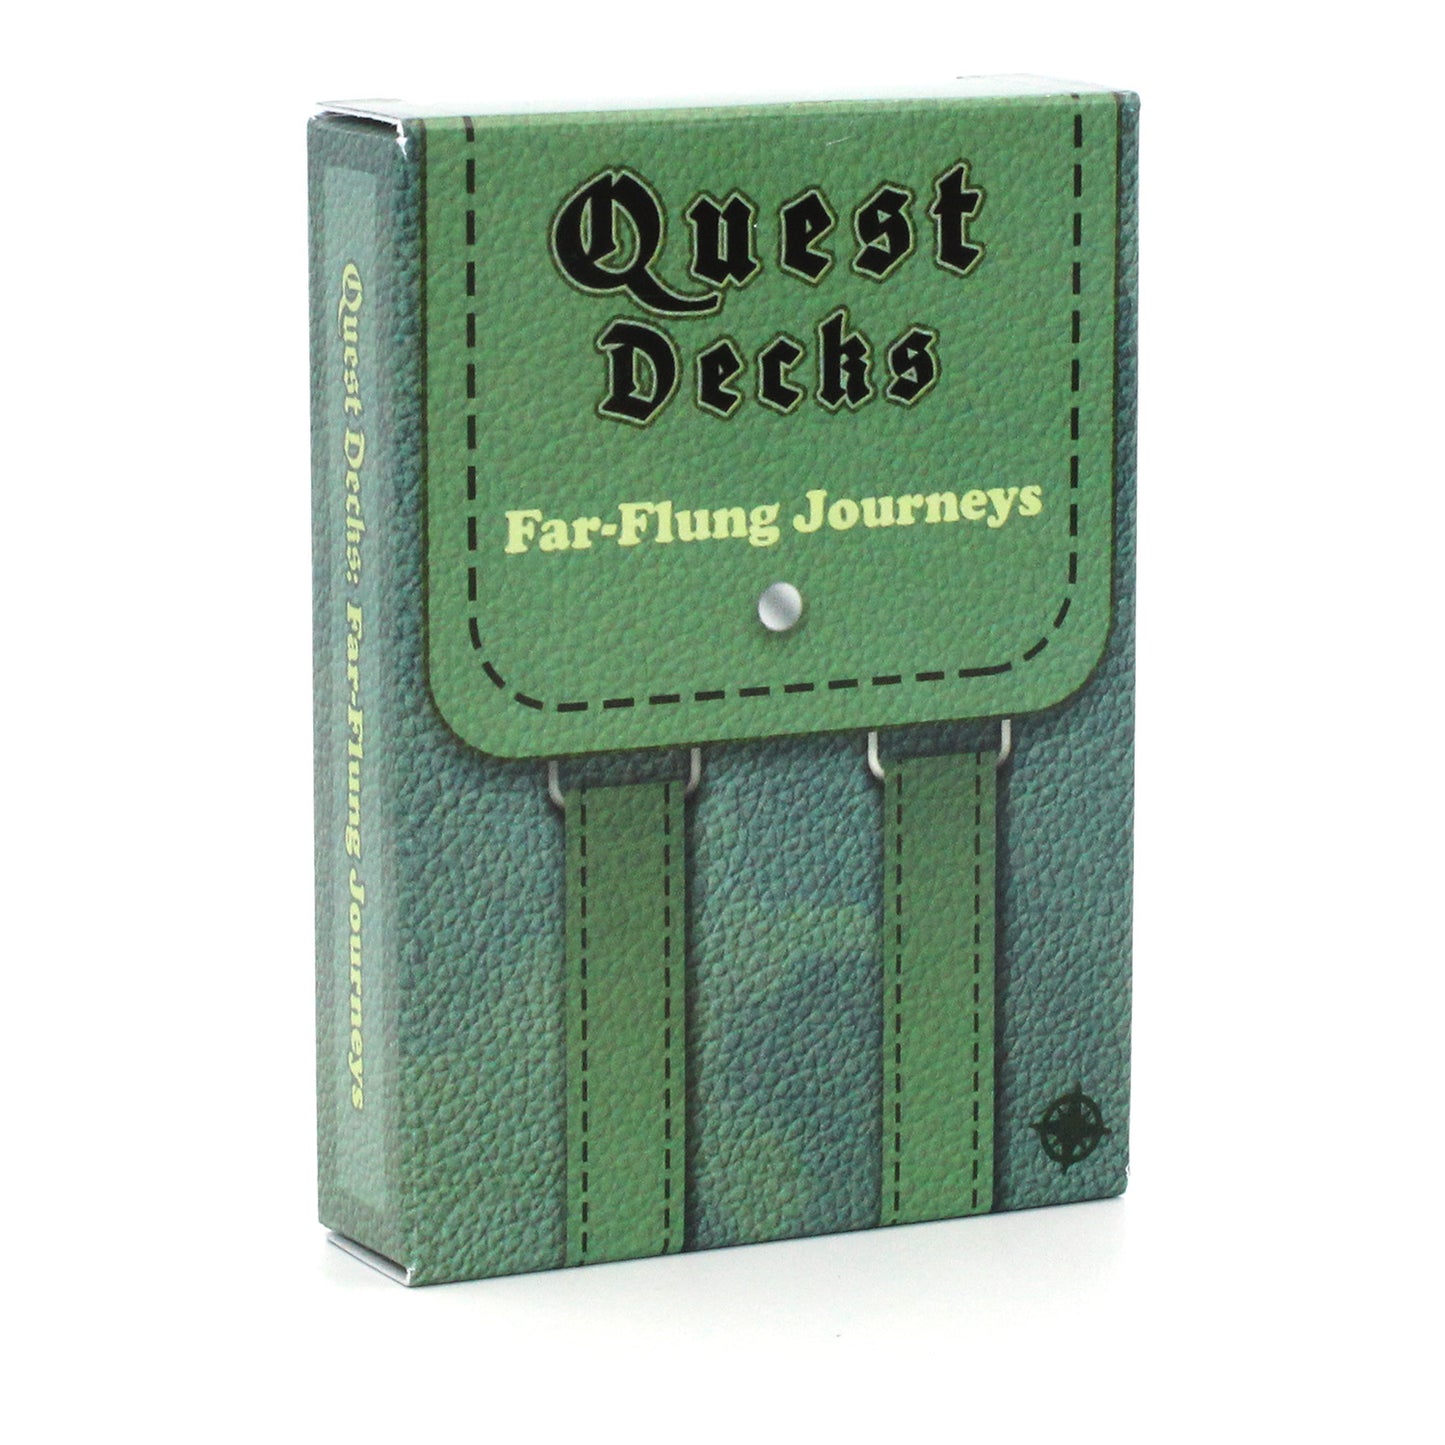 Quest Decks: Far-Flung Journeys